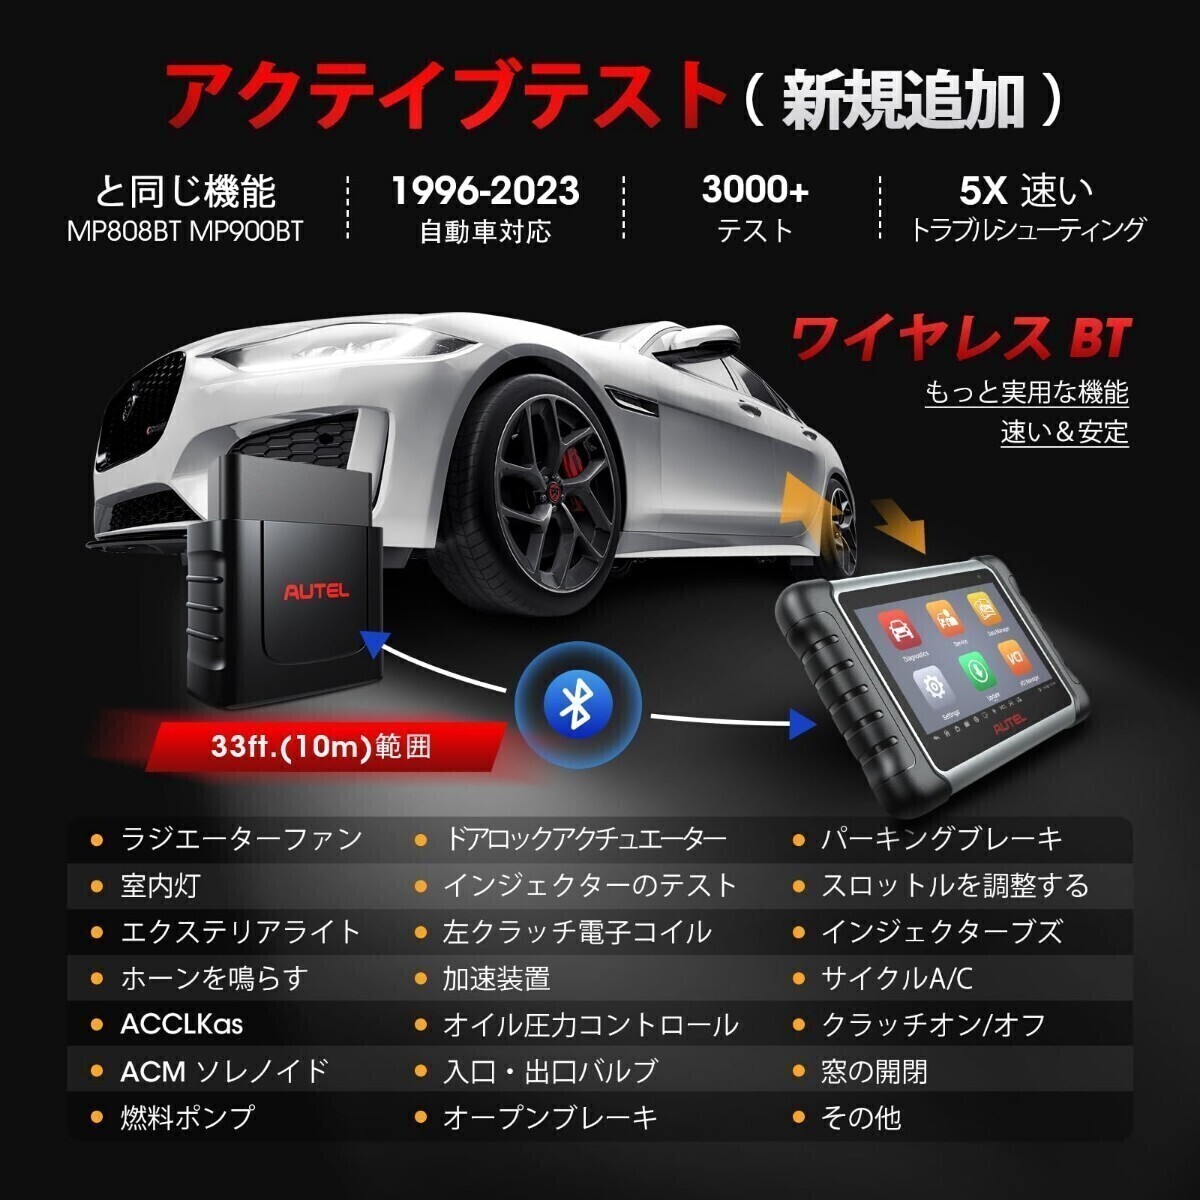 新品・日本語化済 最新版 Autel MK808K-BT OBD2 診断機 輸入車 国産車 軽自動車 ハイブリッド スキャンツール アクティブテスト DPF再生 _画像6